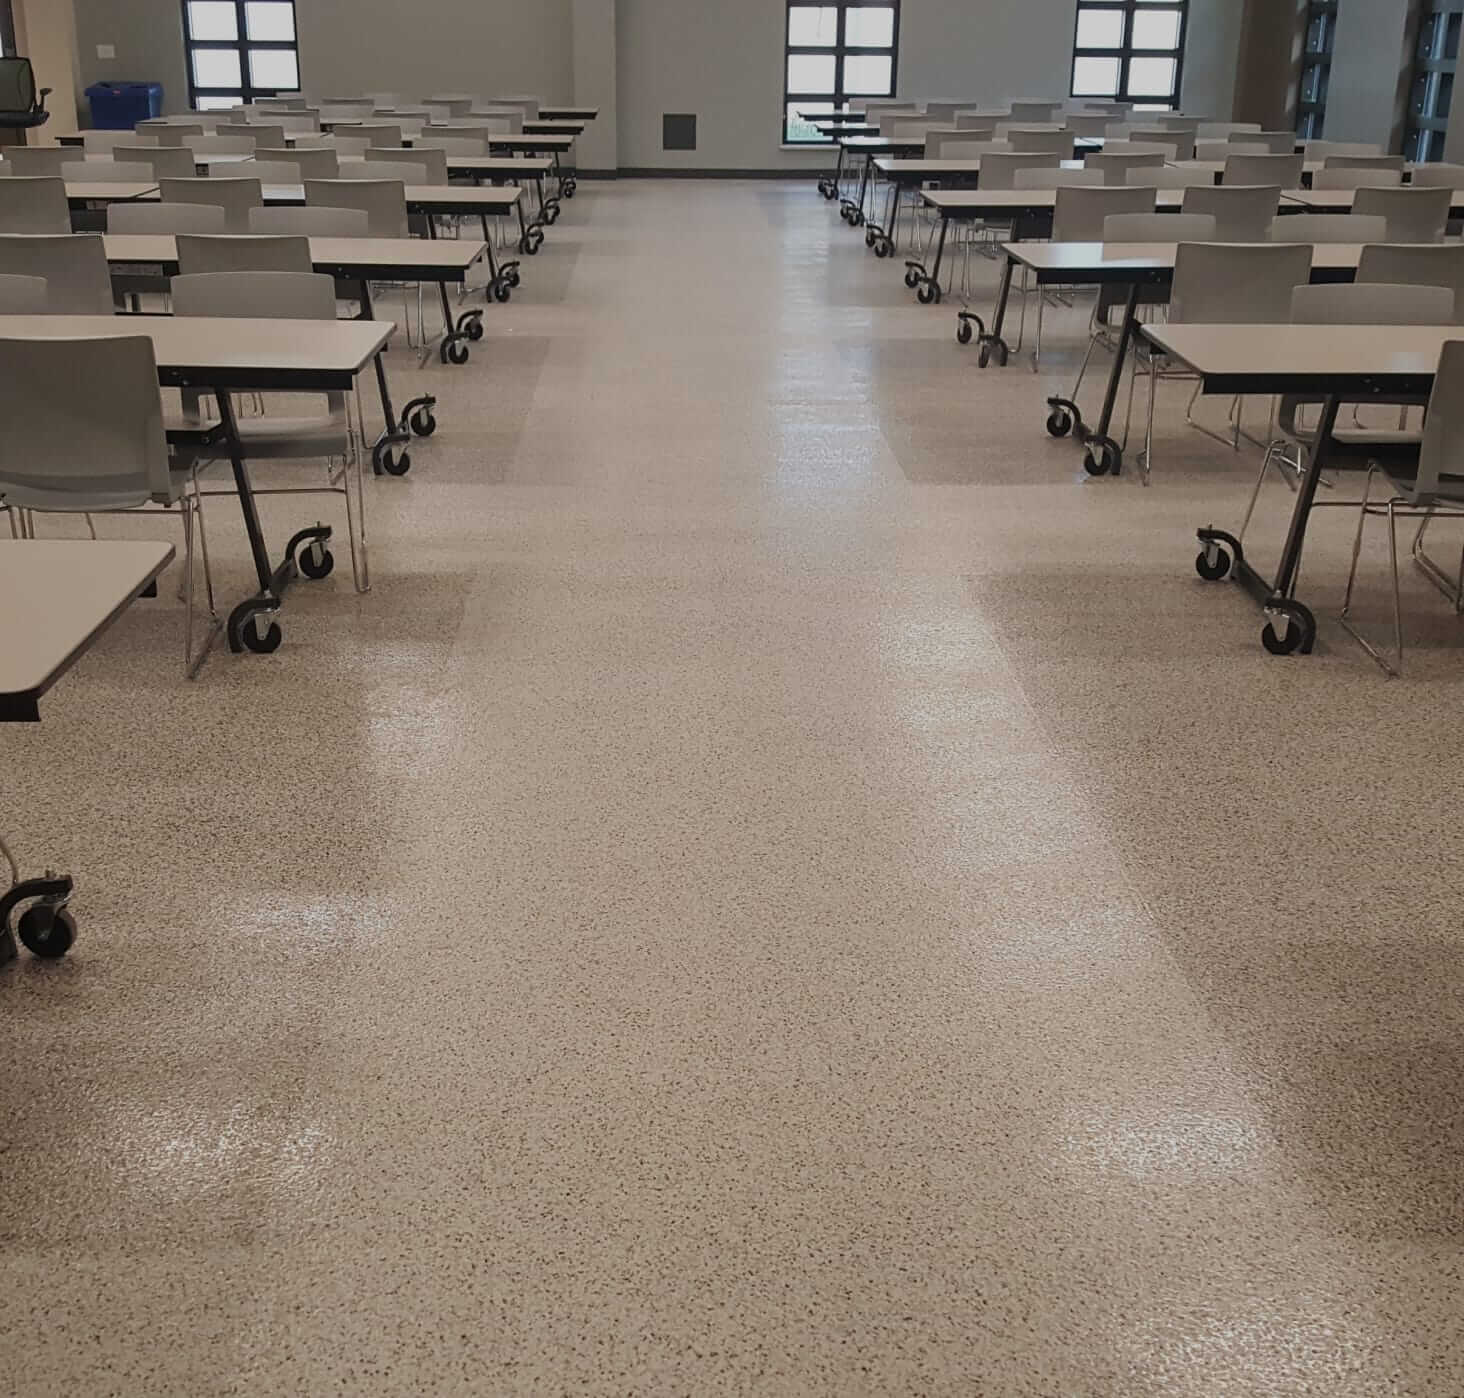 finished floor in school